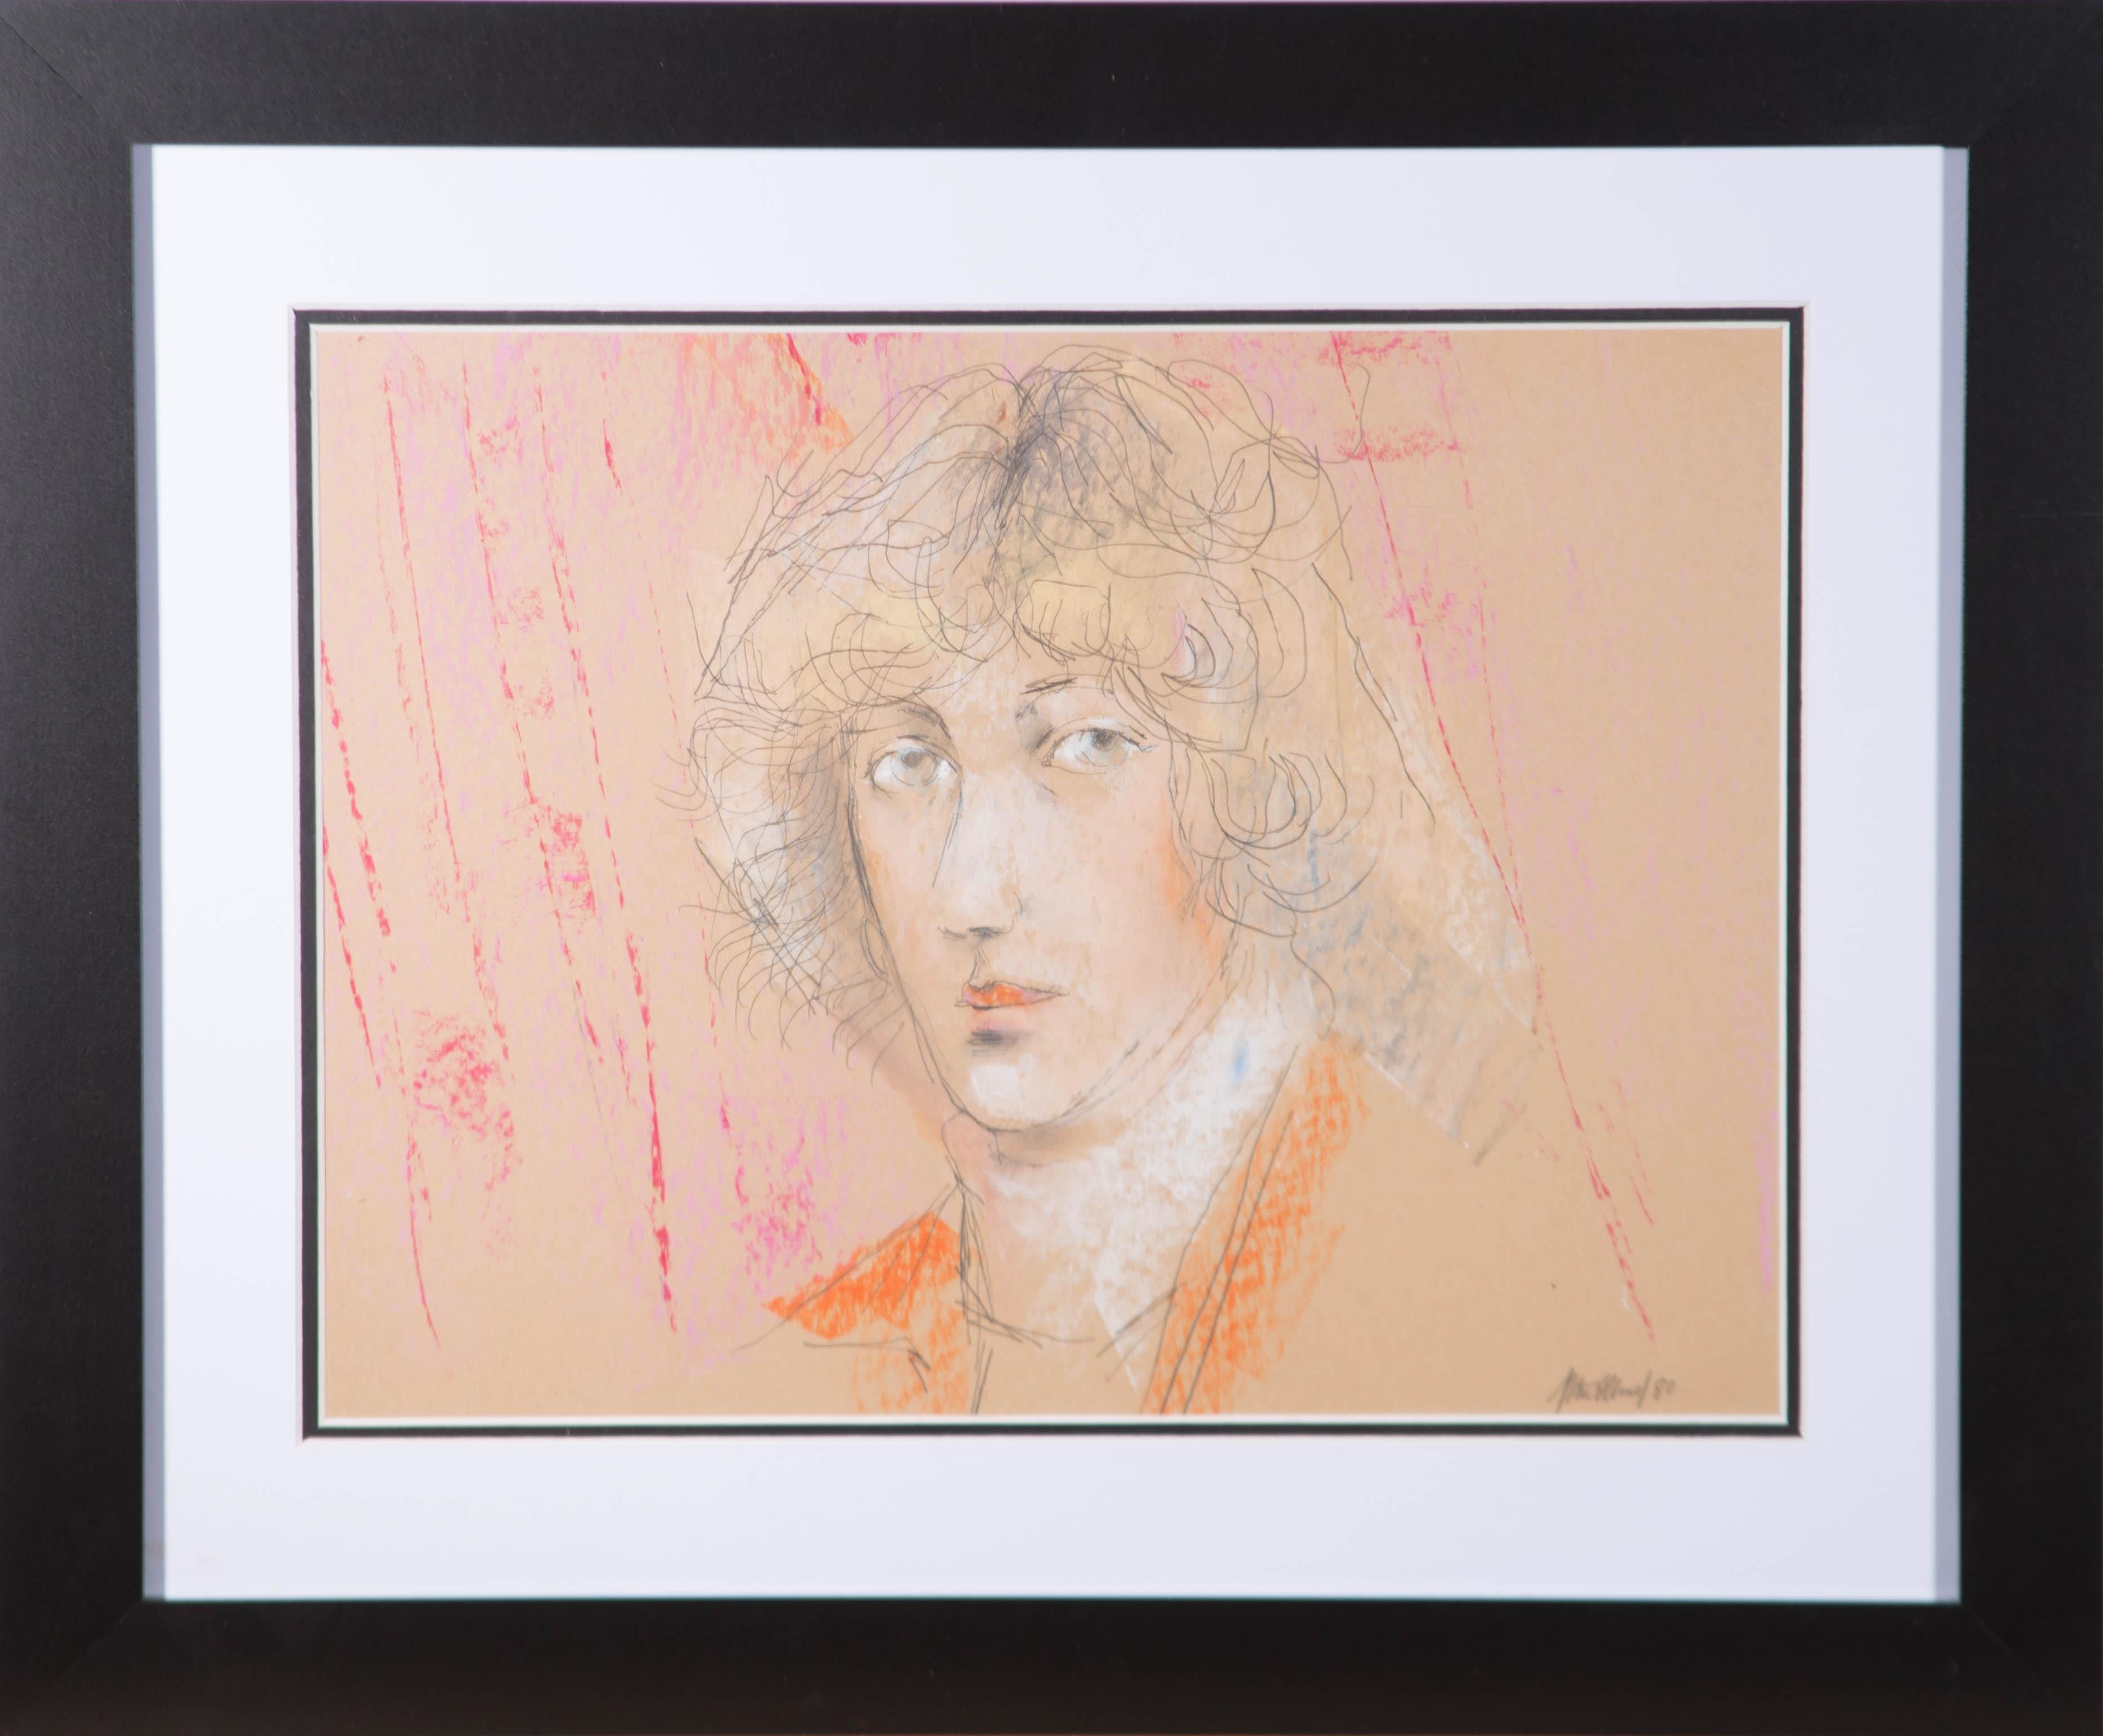 Ein wunderschönes Porträt einer jungen Frau von dem unter Denkmalschutz stehenden britischen Künstler Peter Collins. Hier hat er die mühelose Schönheit der Dargestellten mit wenigen, ausdrucksstarken Bleistiftstrichen und Farbflecken eingefangen.